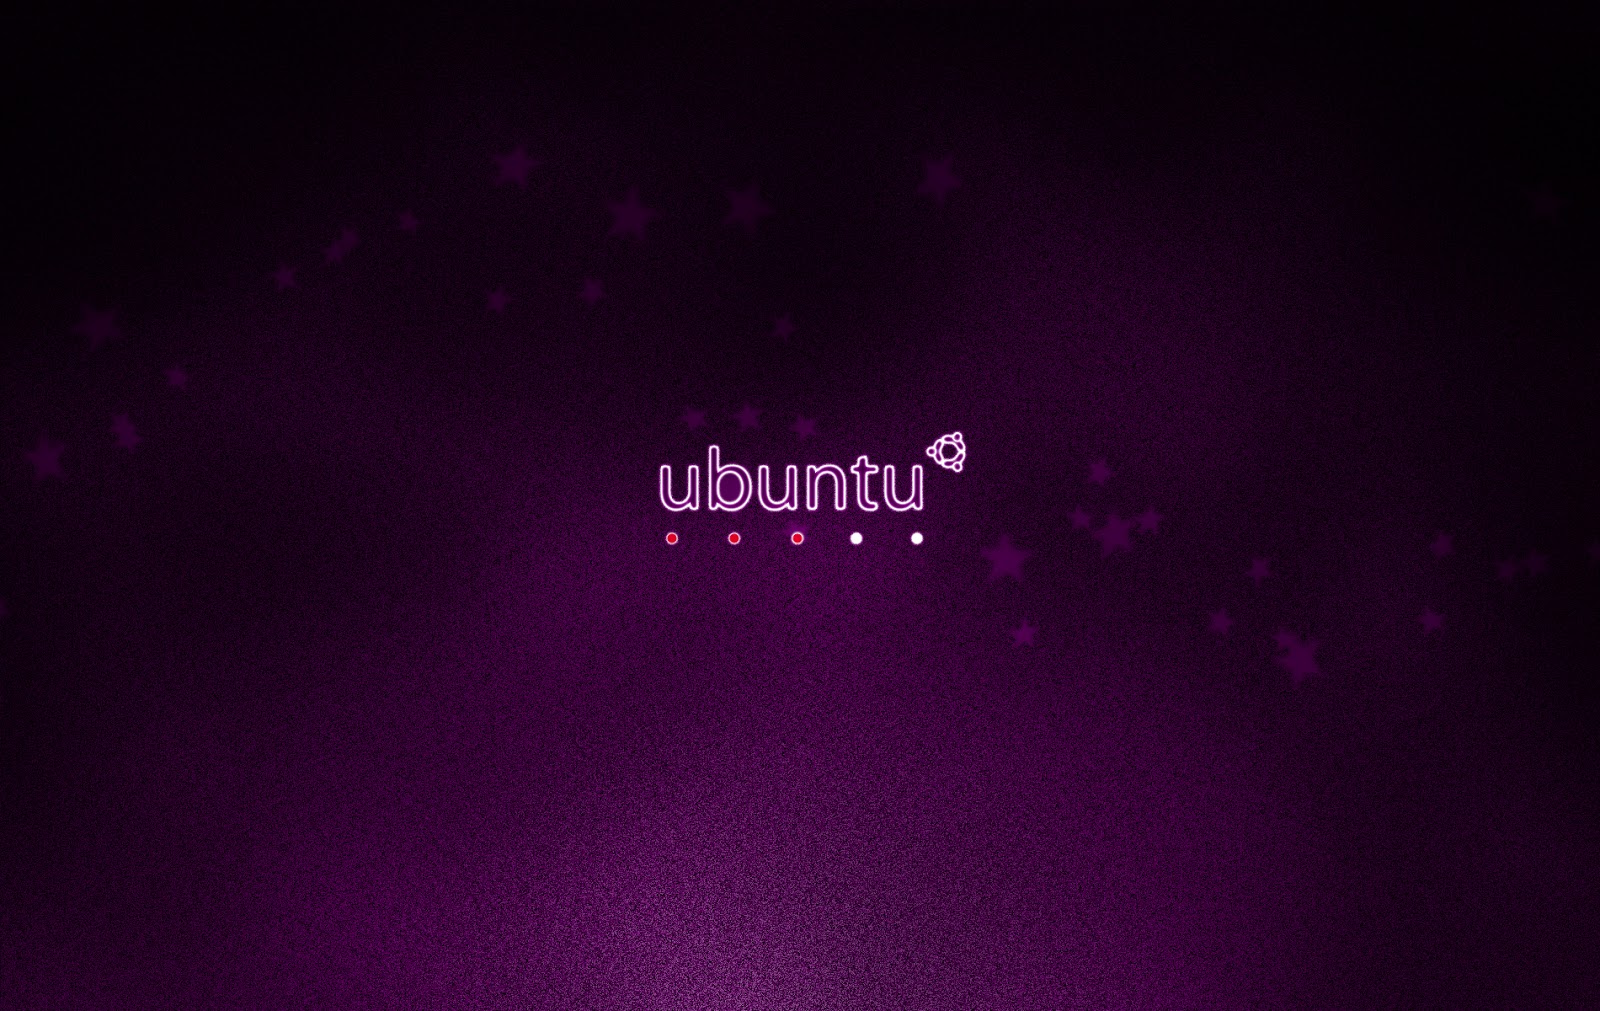 ubuntu hd wallpapers ubuntu hd wallpapers ubuntu hd wallpapers ubuntu 1600x1011